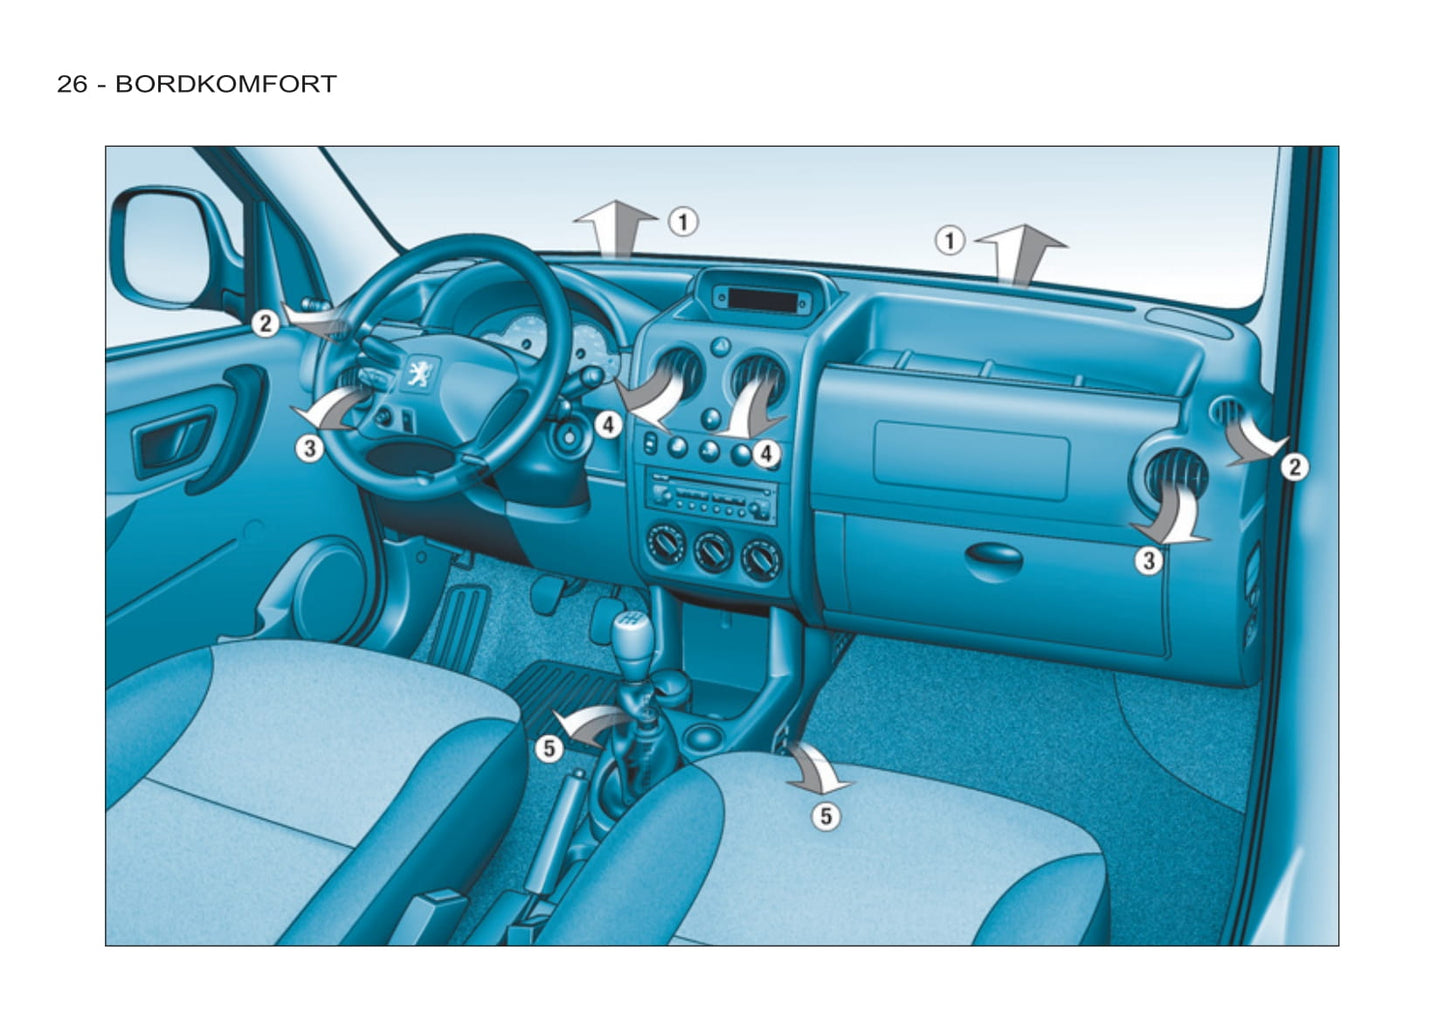 2011-2012 Peugeot Partner Origin Owner's Manual | German